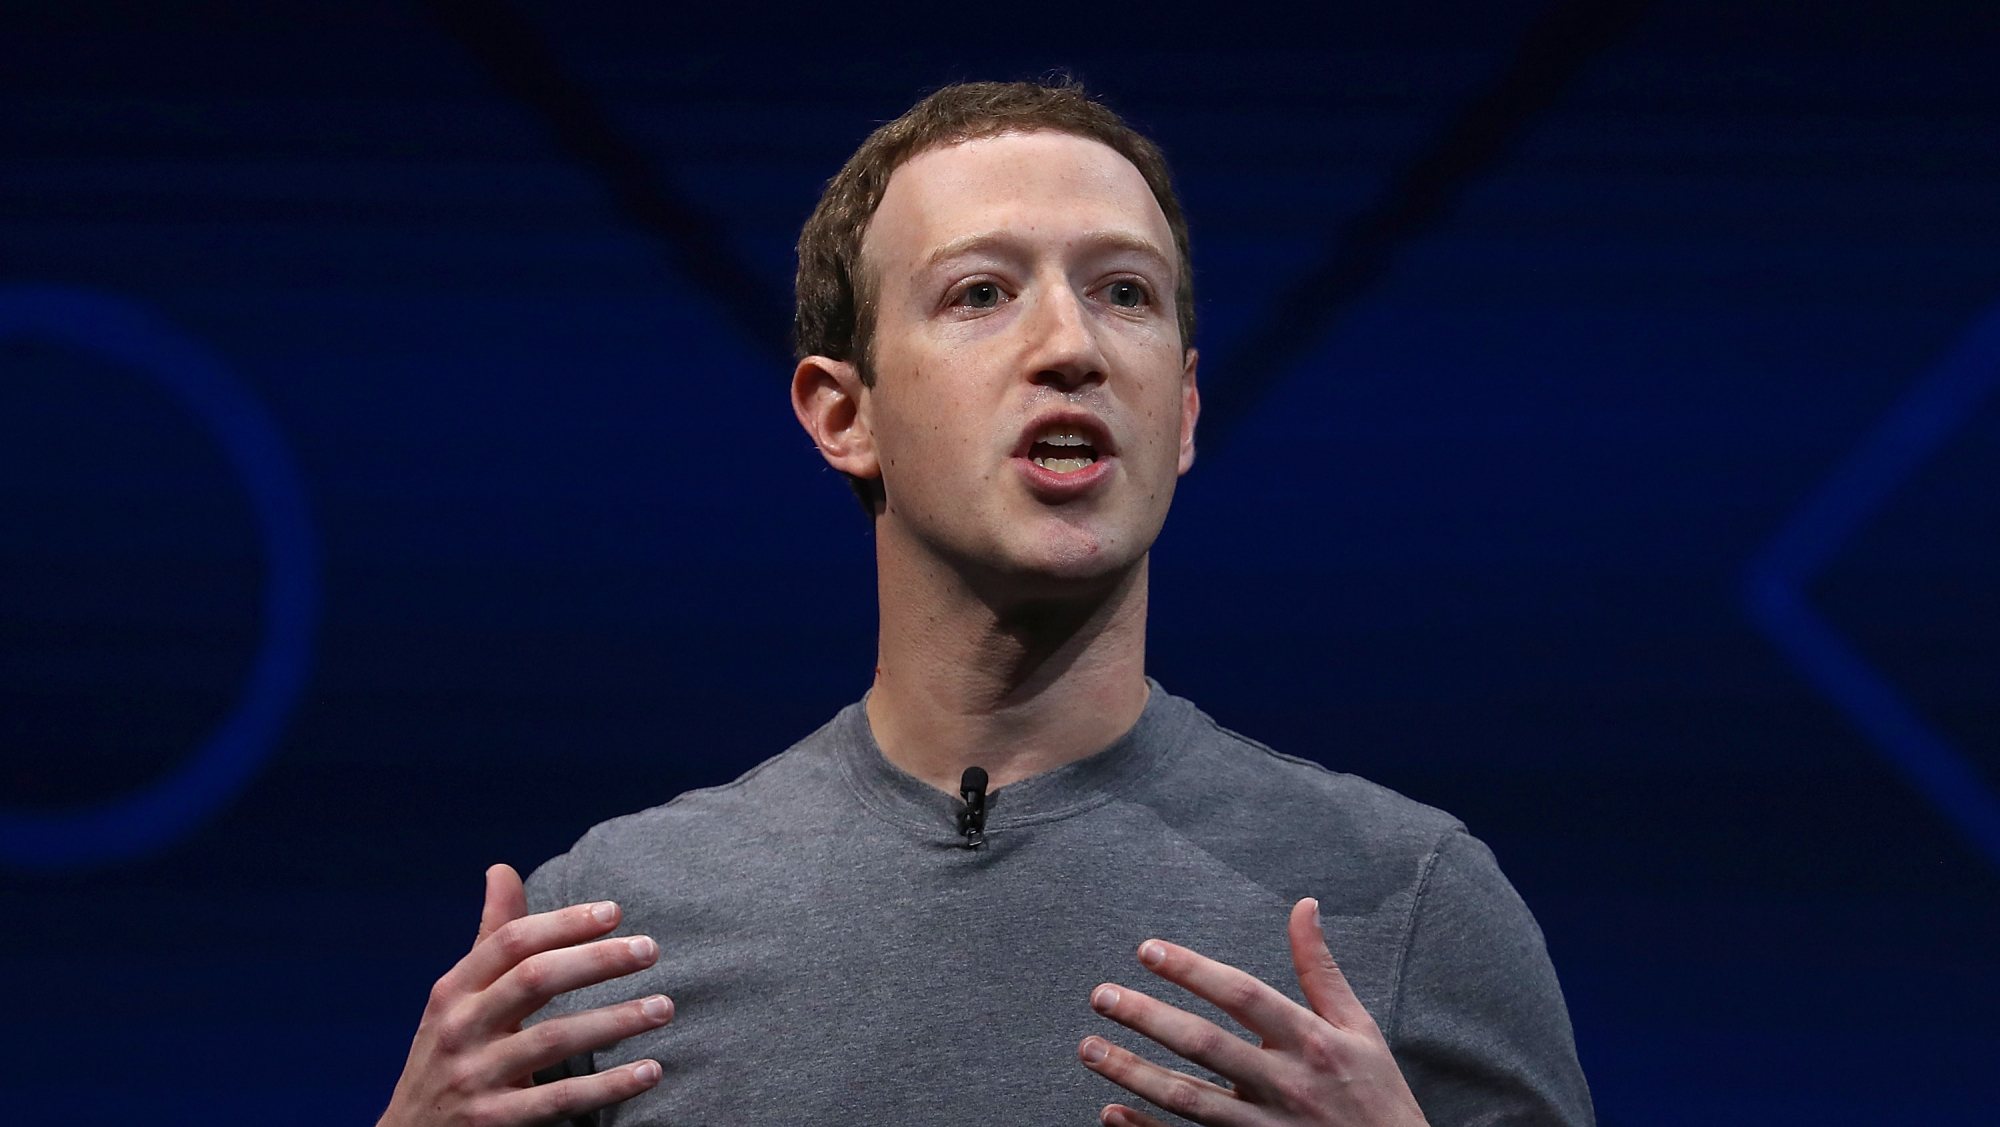 Criado por Mark Zuckerberg, o Facebook, além da rede social com o mesmo nome, detém o Instagram e o WhatsApp